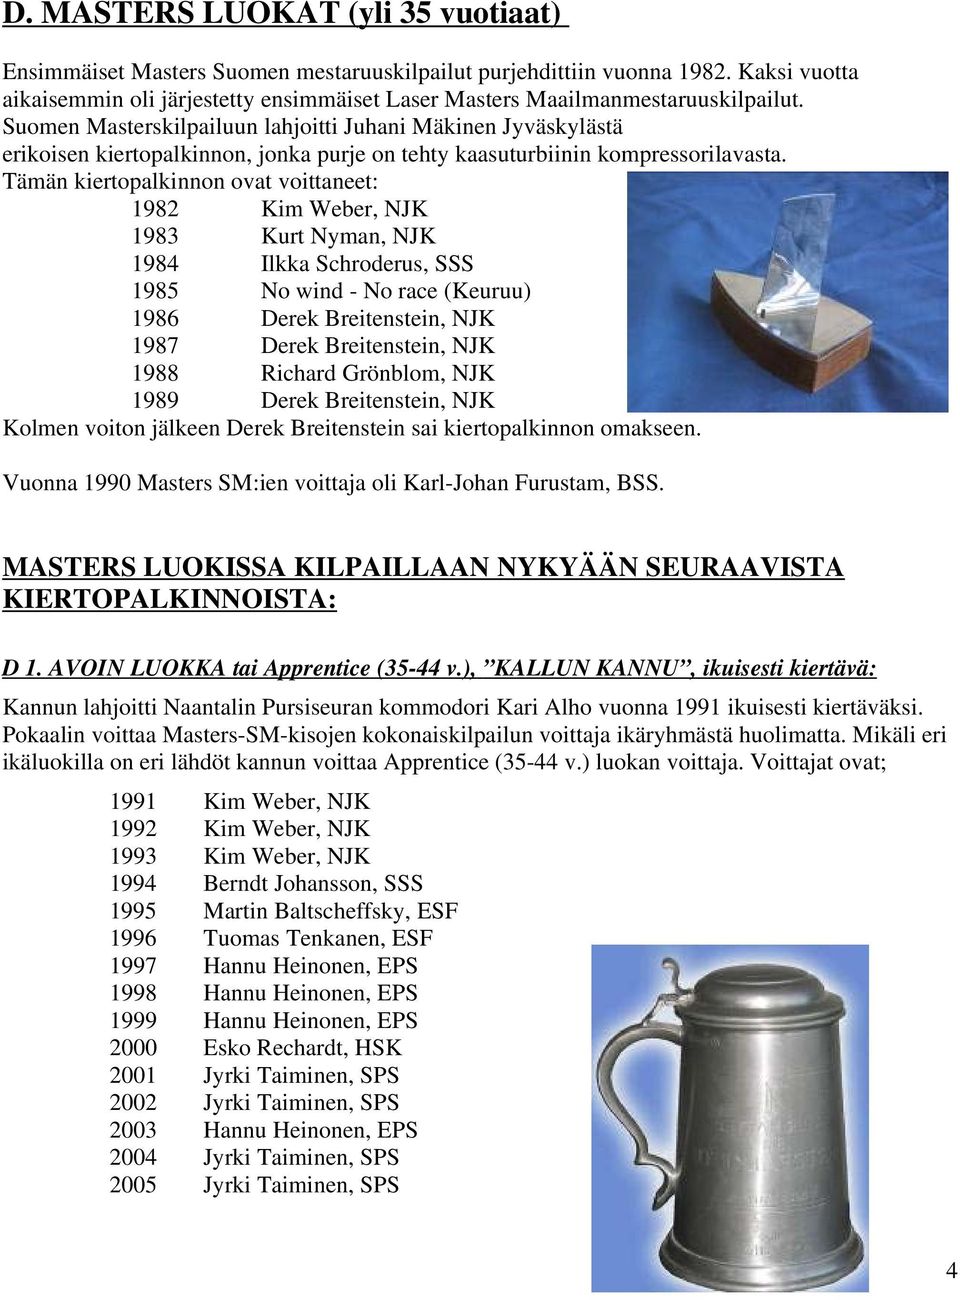 Suomen Masterskilpailuun lahjoitti Juhani Mäkinen Jyväskylästä erikoisen kiertopalkinnon, jonka purje on tehty kaasuturbiinin kompressorilavasta.